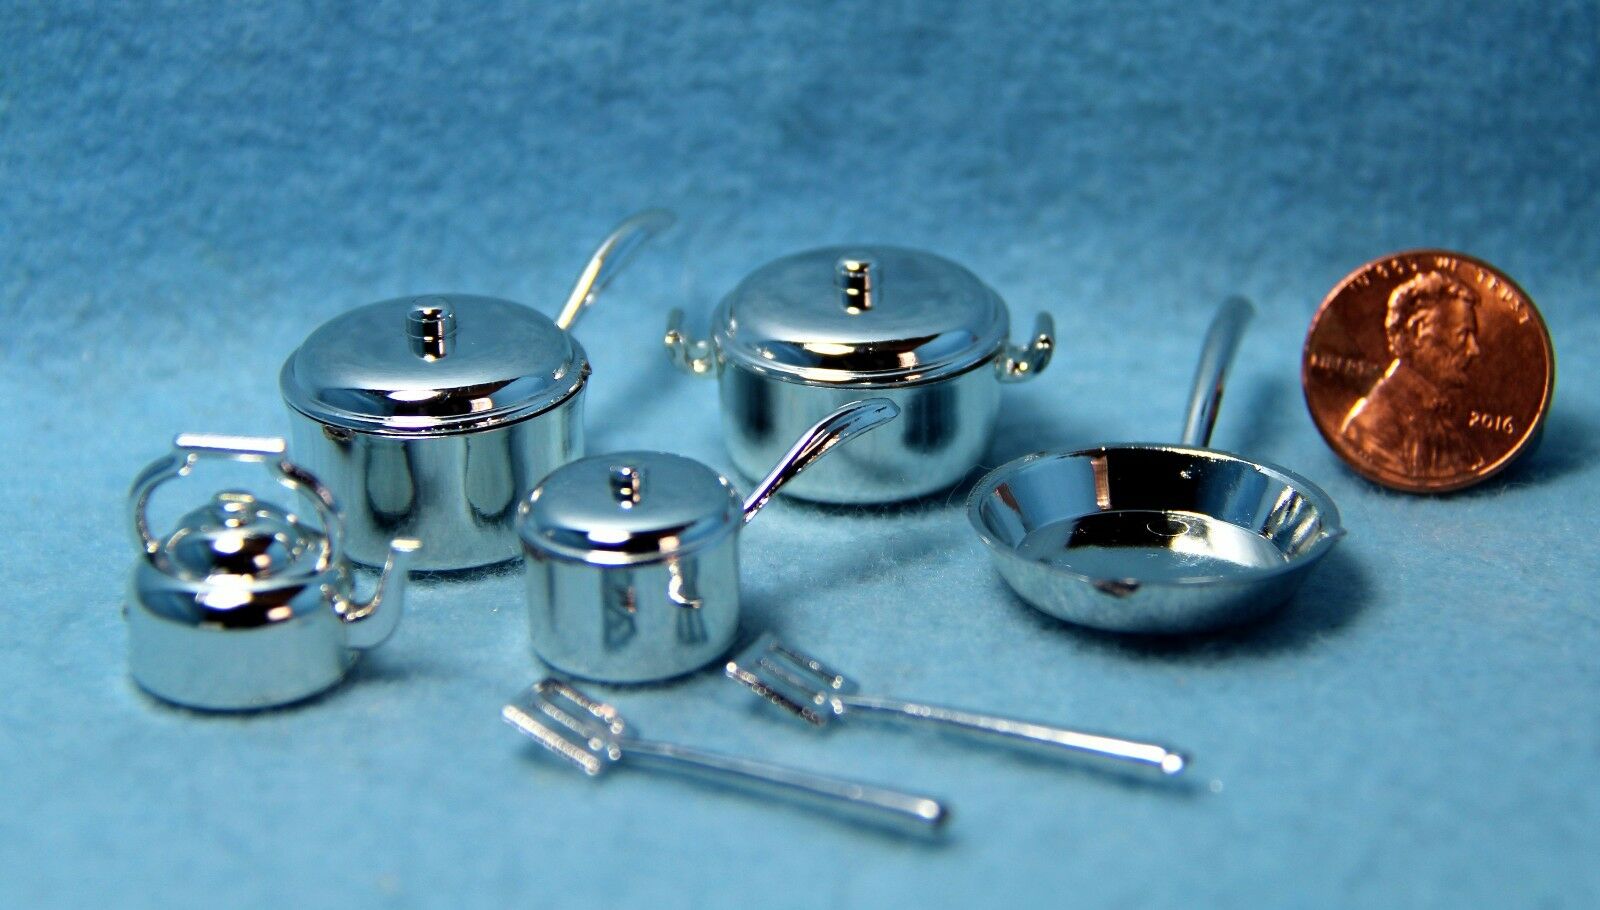 Dollhouse Miniature Kitchen Cookware Set Pots, Pans, Tea Pot & More H1927